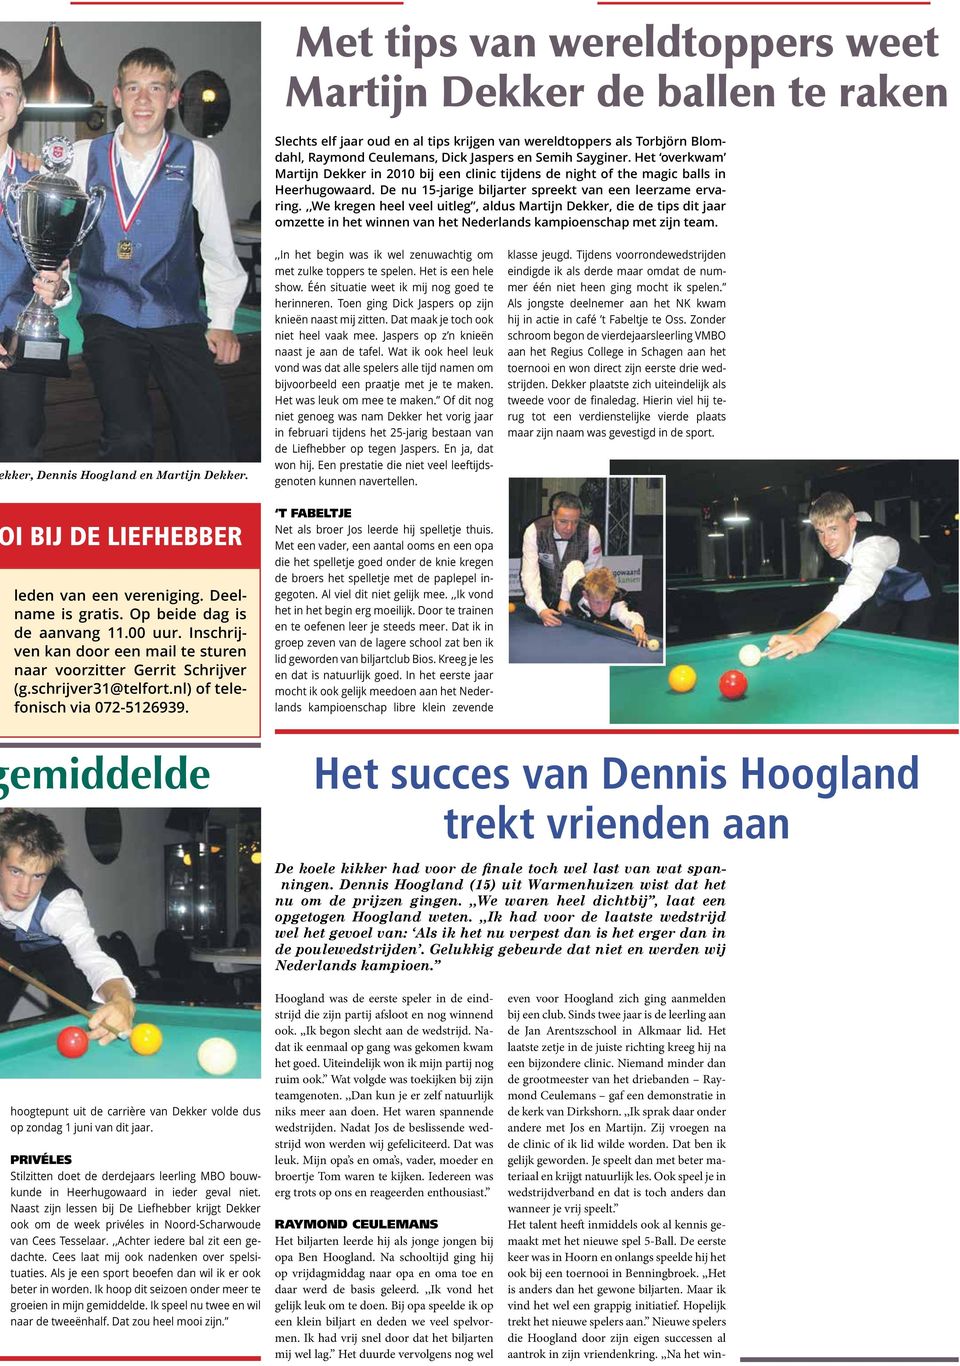 ,,we kregen heel veel uitleg, aldus Martijn Dekker, die de tips dit jaar omzette in het winnen van het Nederlands kampioenschap met zijn team. kker, Dennis Hoogland en Martijn Dekker.